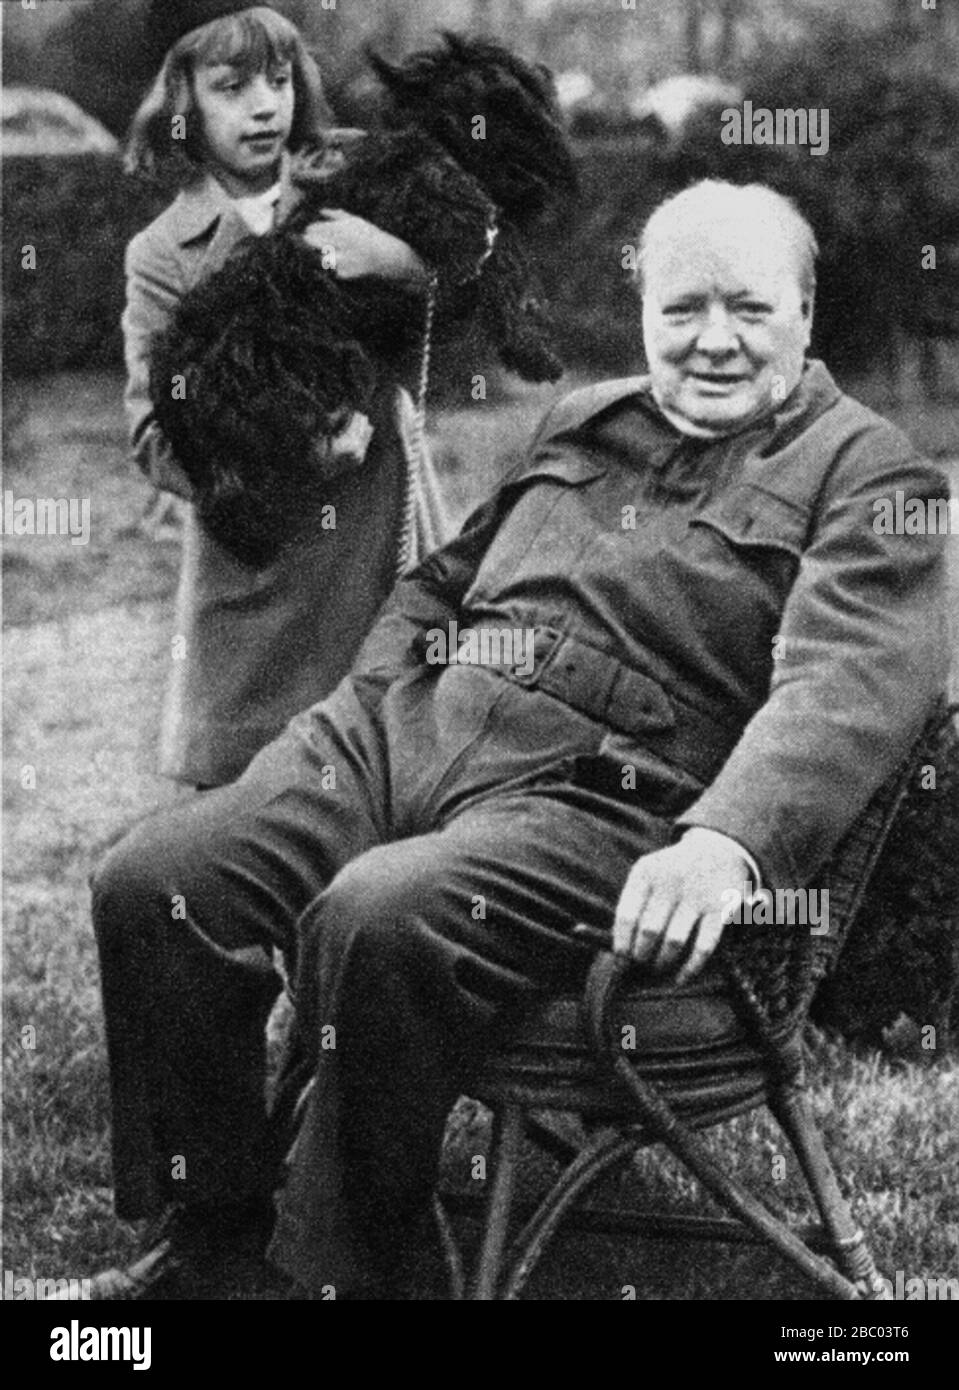 Churchill mit Diana Hopkins, Tochter von Harry Hopkins, Roosevelts Berater für Außenpolitik. Mit ihnen der Hund des Präsidenten, 'Fala'. Dezember 1941 Stockfoto